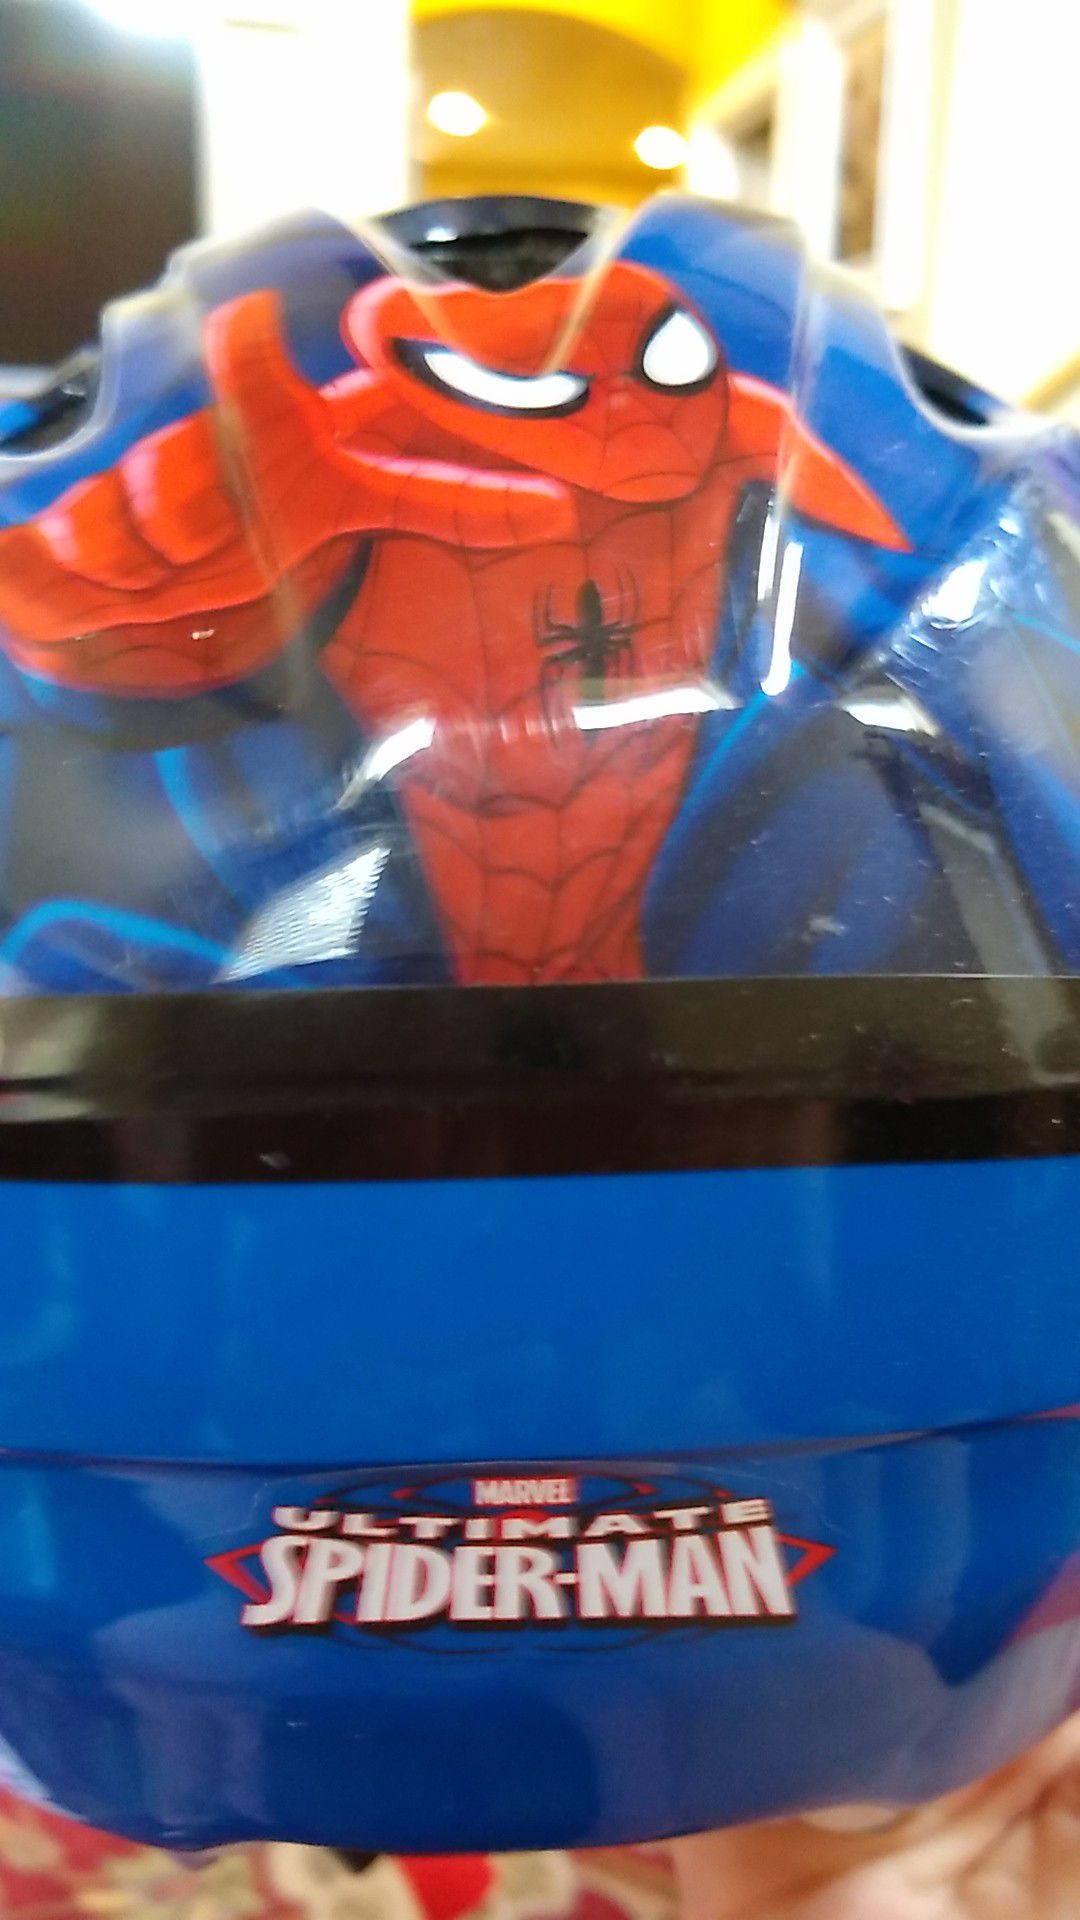 Marvel Spiderman Helmet for toddler